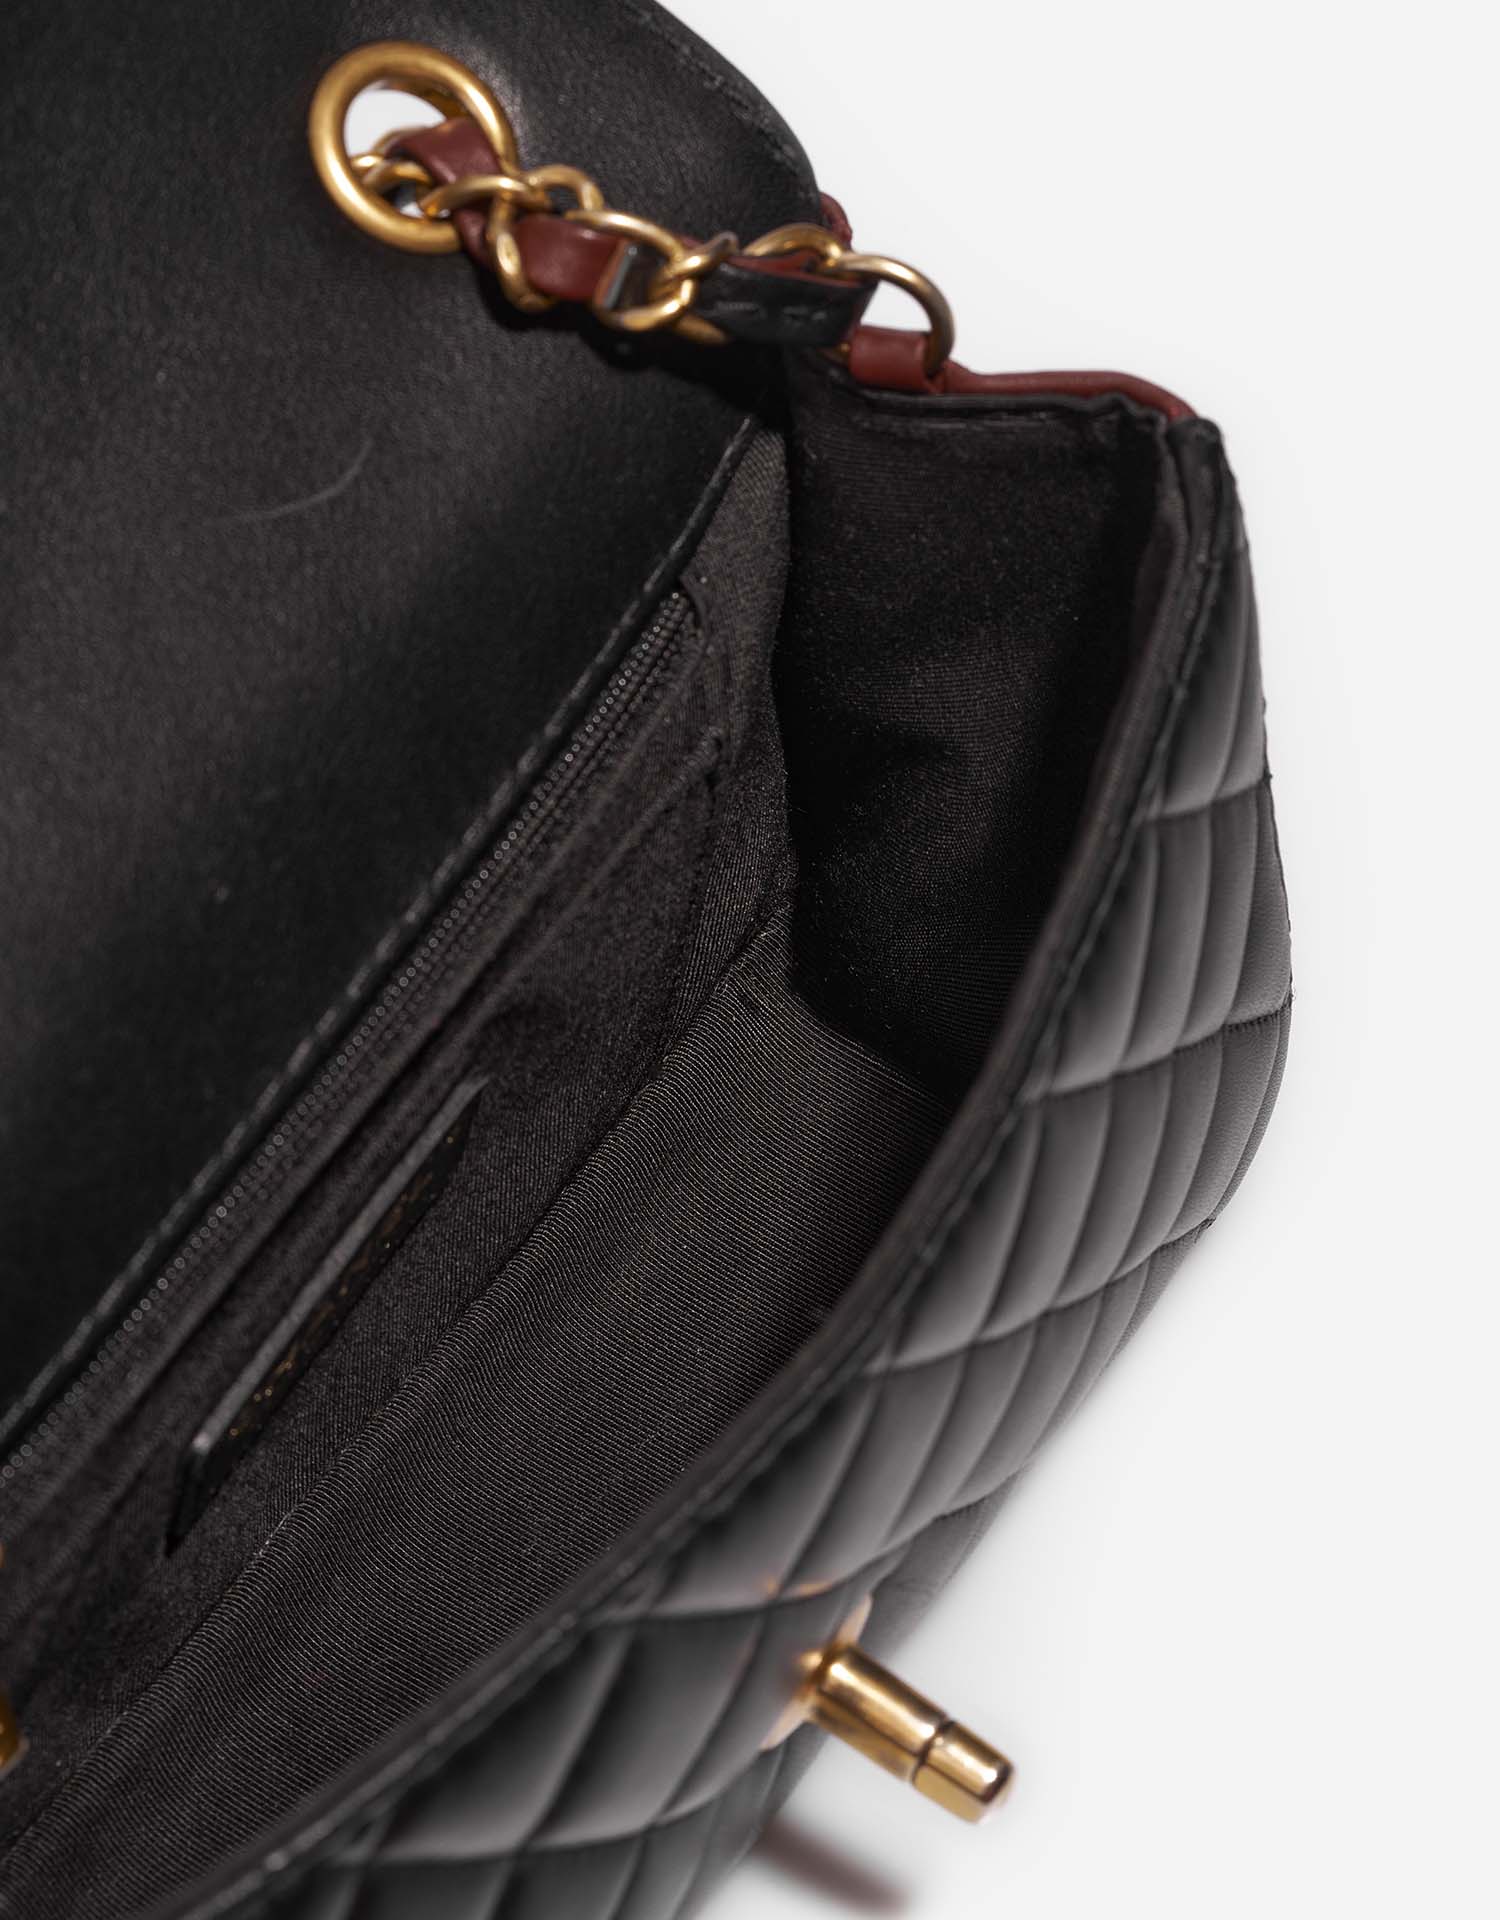 Chanel Timeless MiniRectangular Black-DarkBurgundy Inside | Verkaufen Sie Ihre Designer-Tasche auf Saclab.com